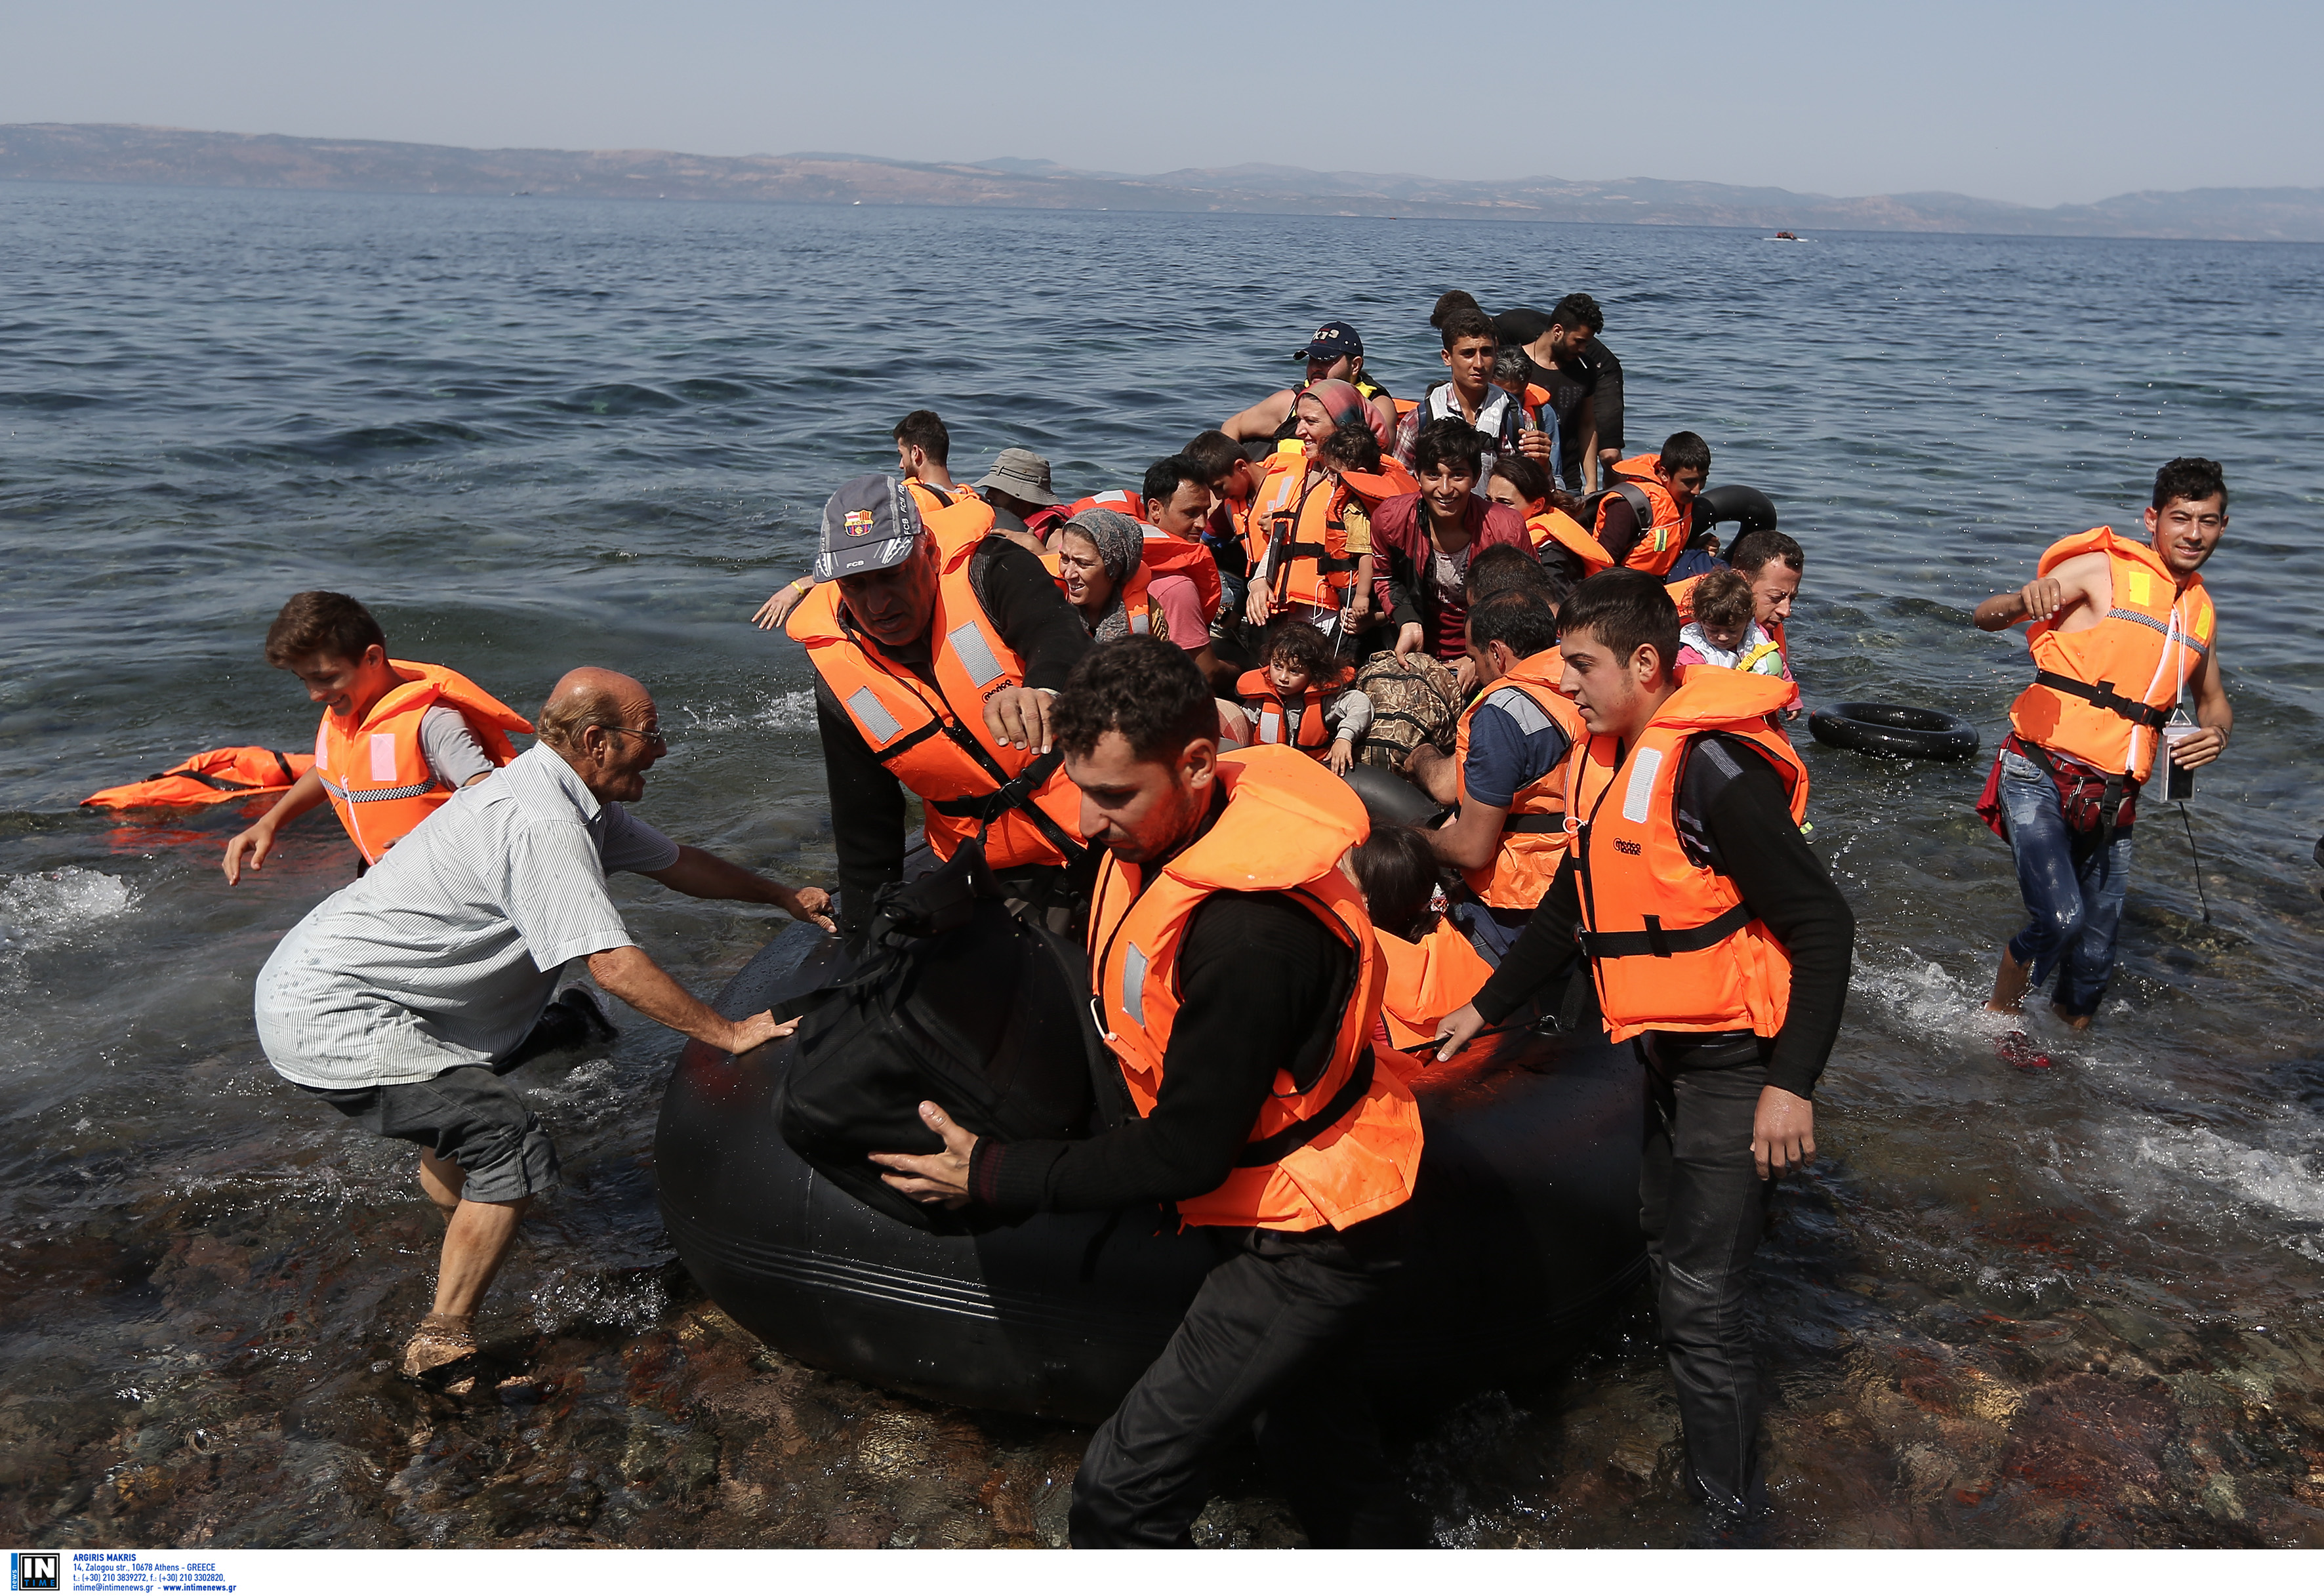 Πάνω από 7.000 αιτούντες άσυλο στα νησιά του βορείου Αιγαίου τον Νοέμβριο